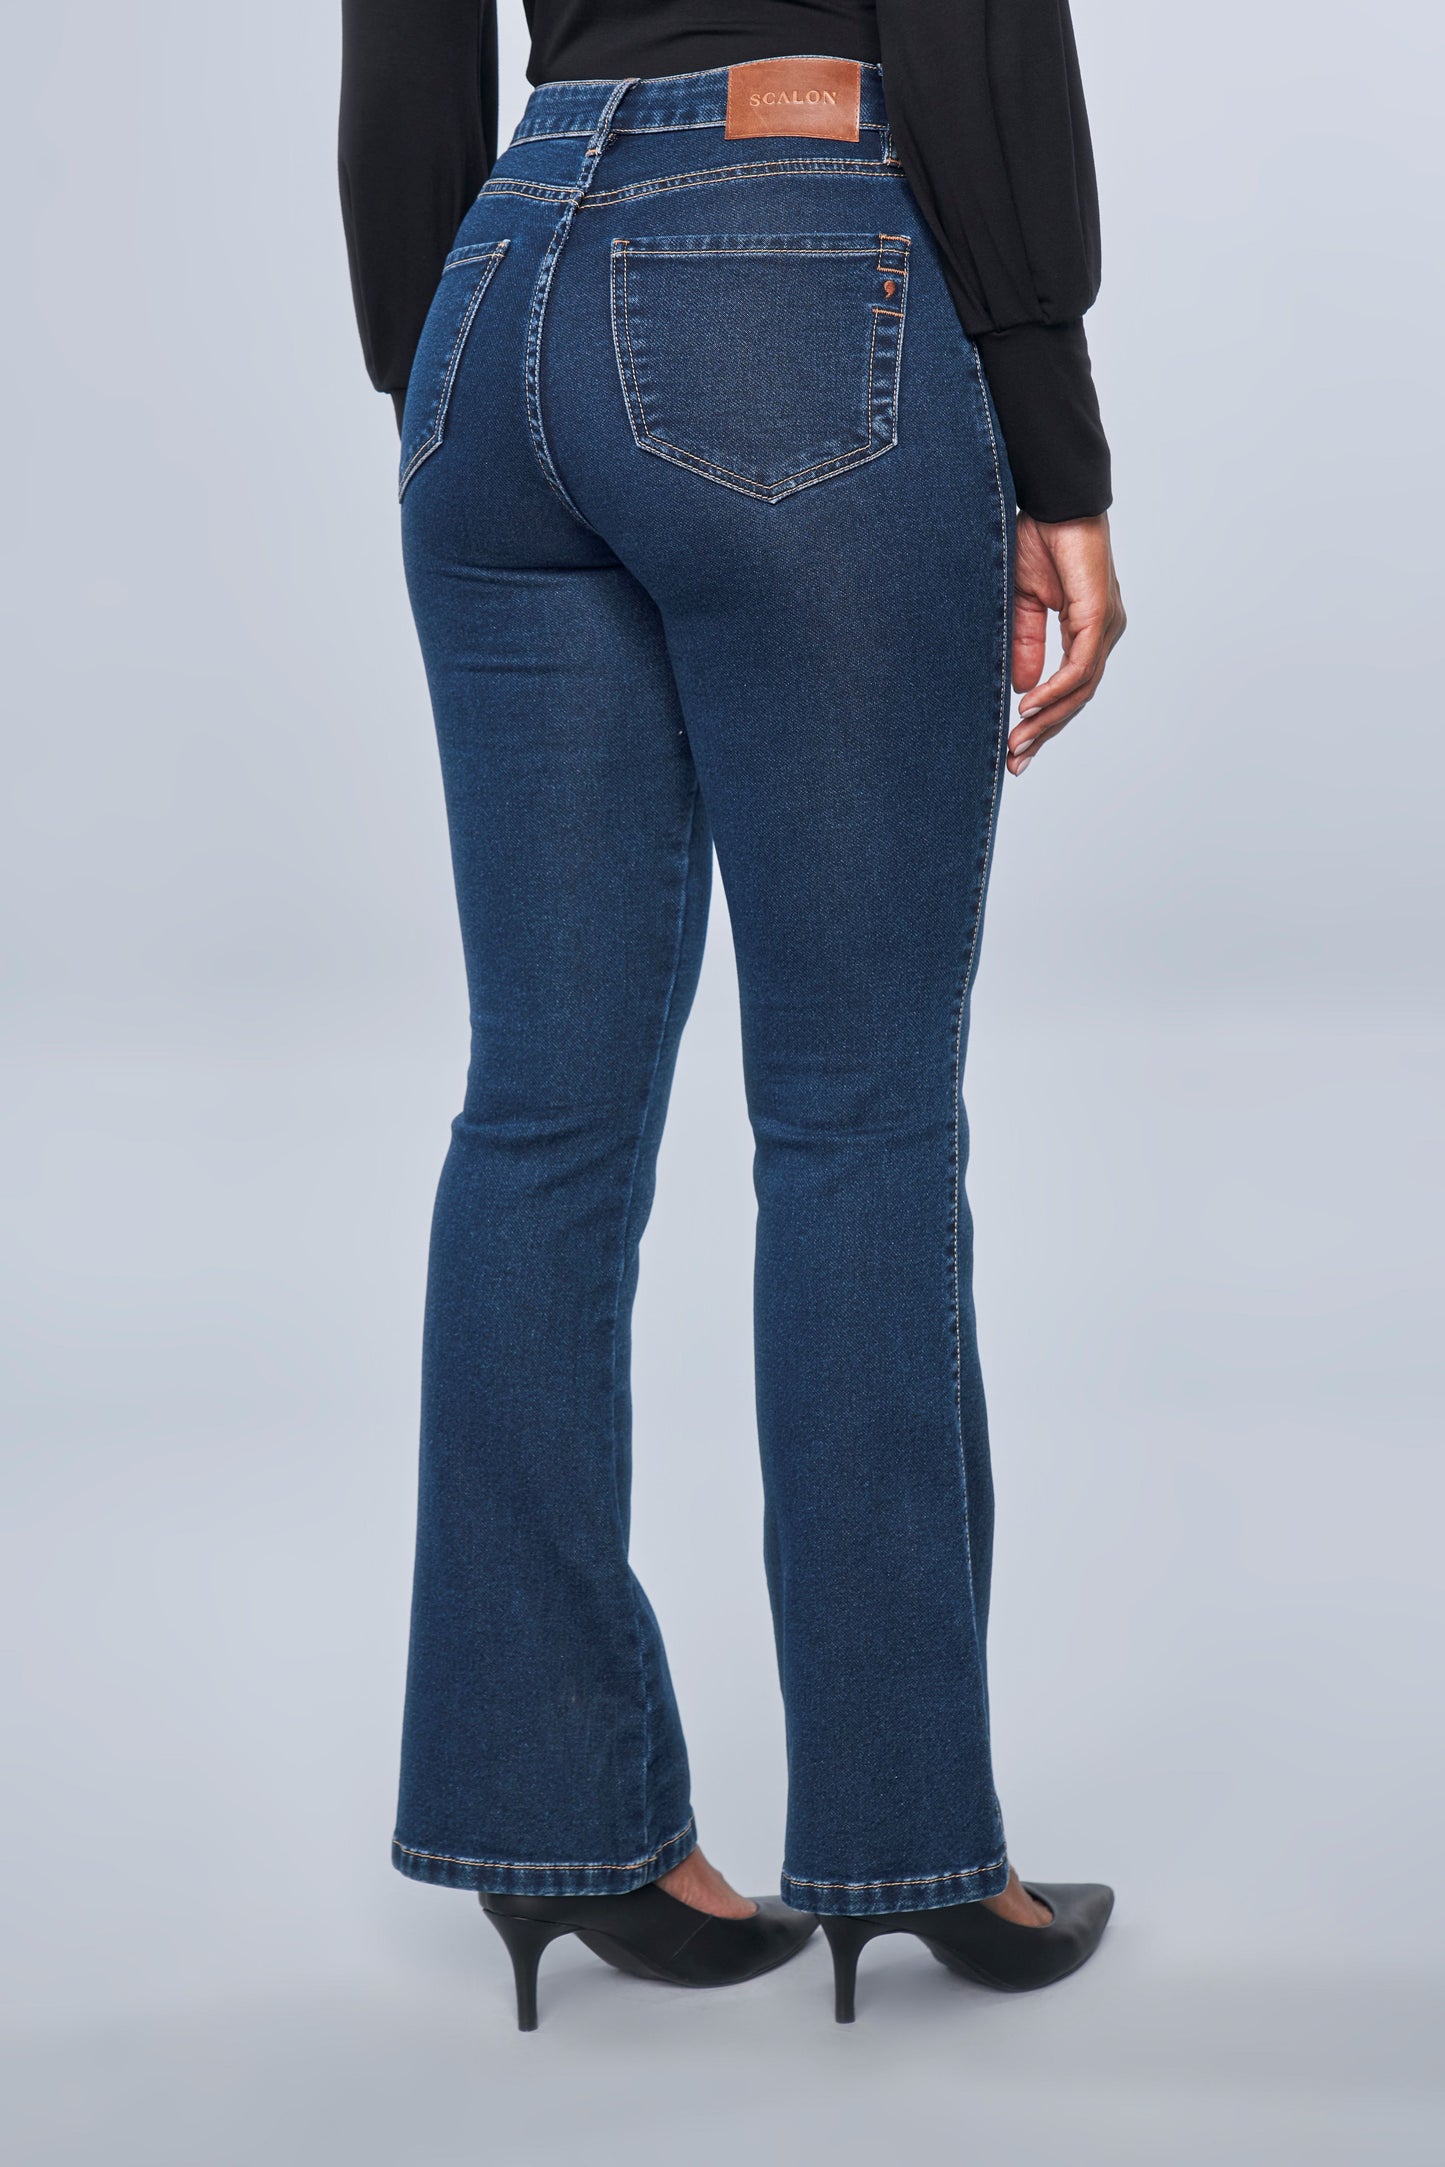 calça jeans malha boot cut cintura intermediária com bordado